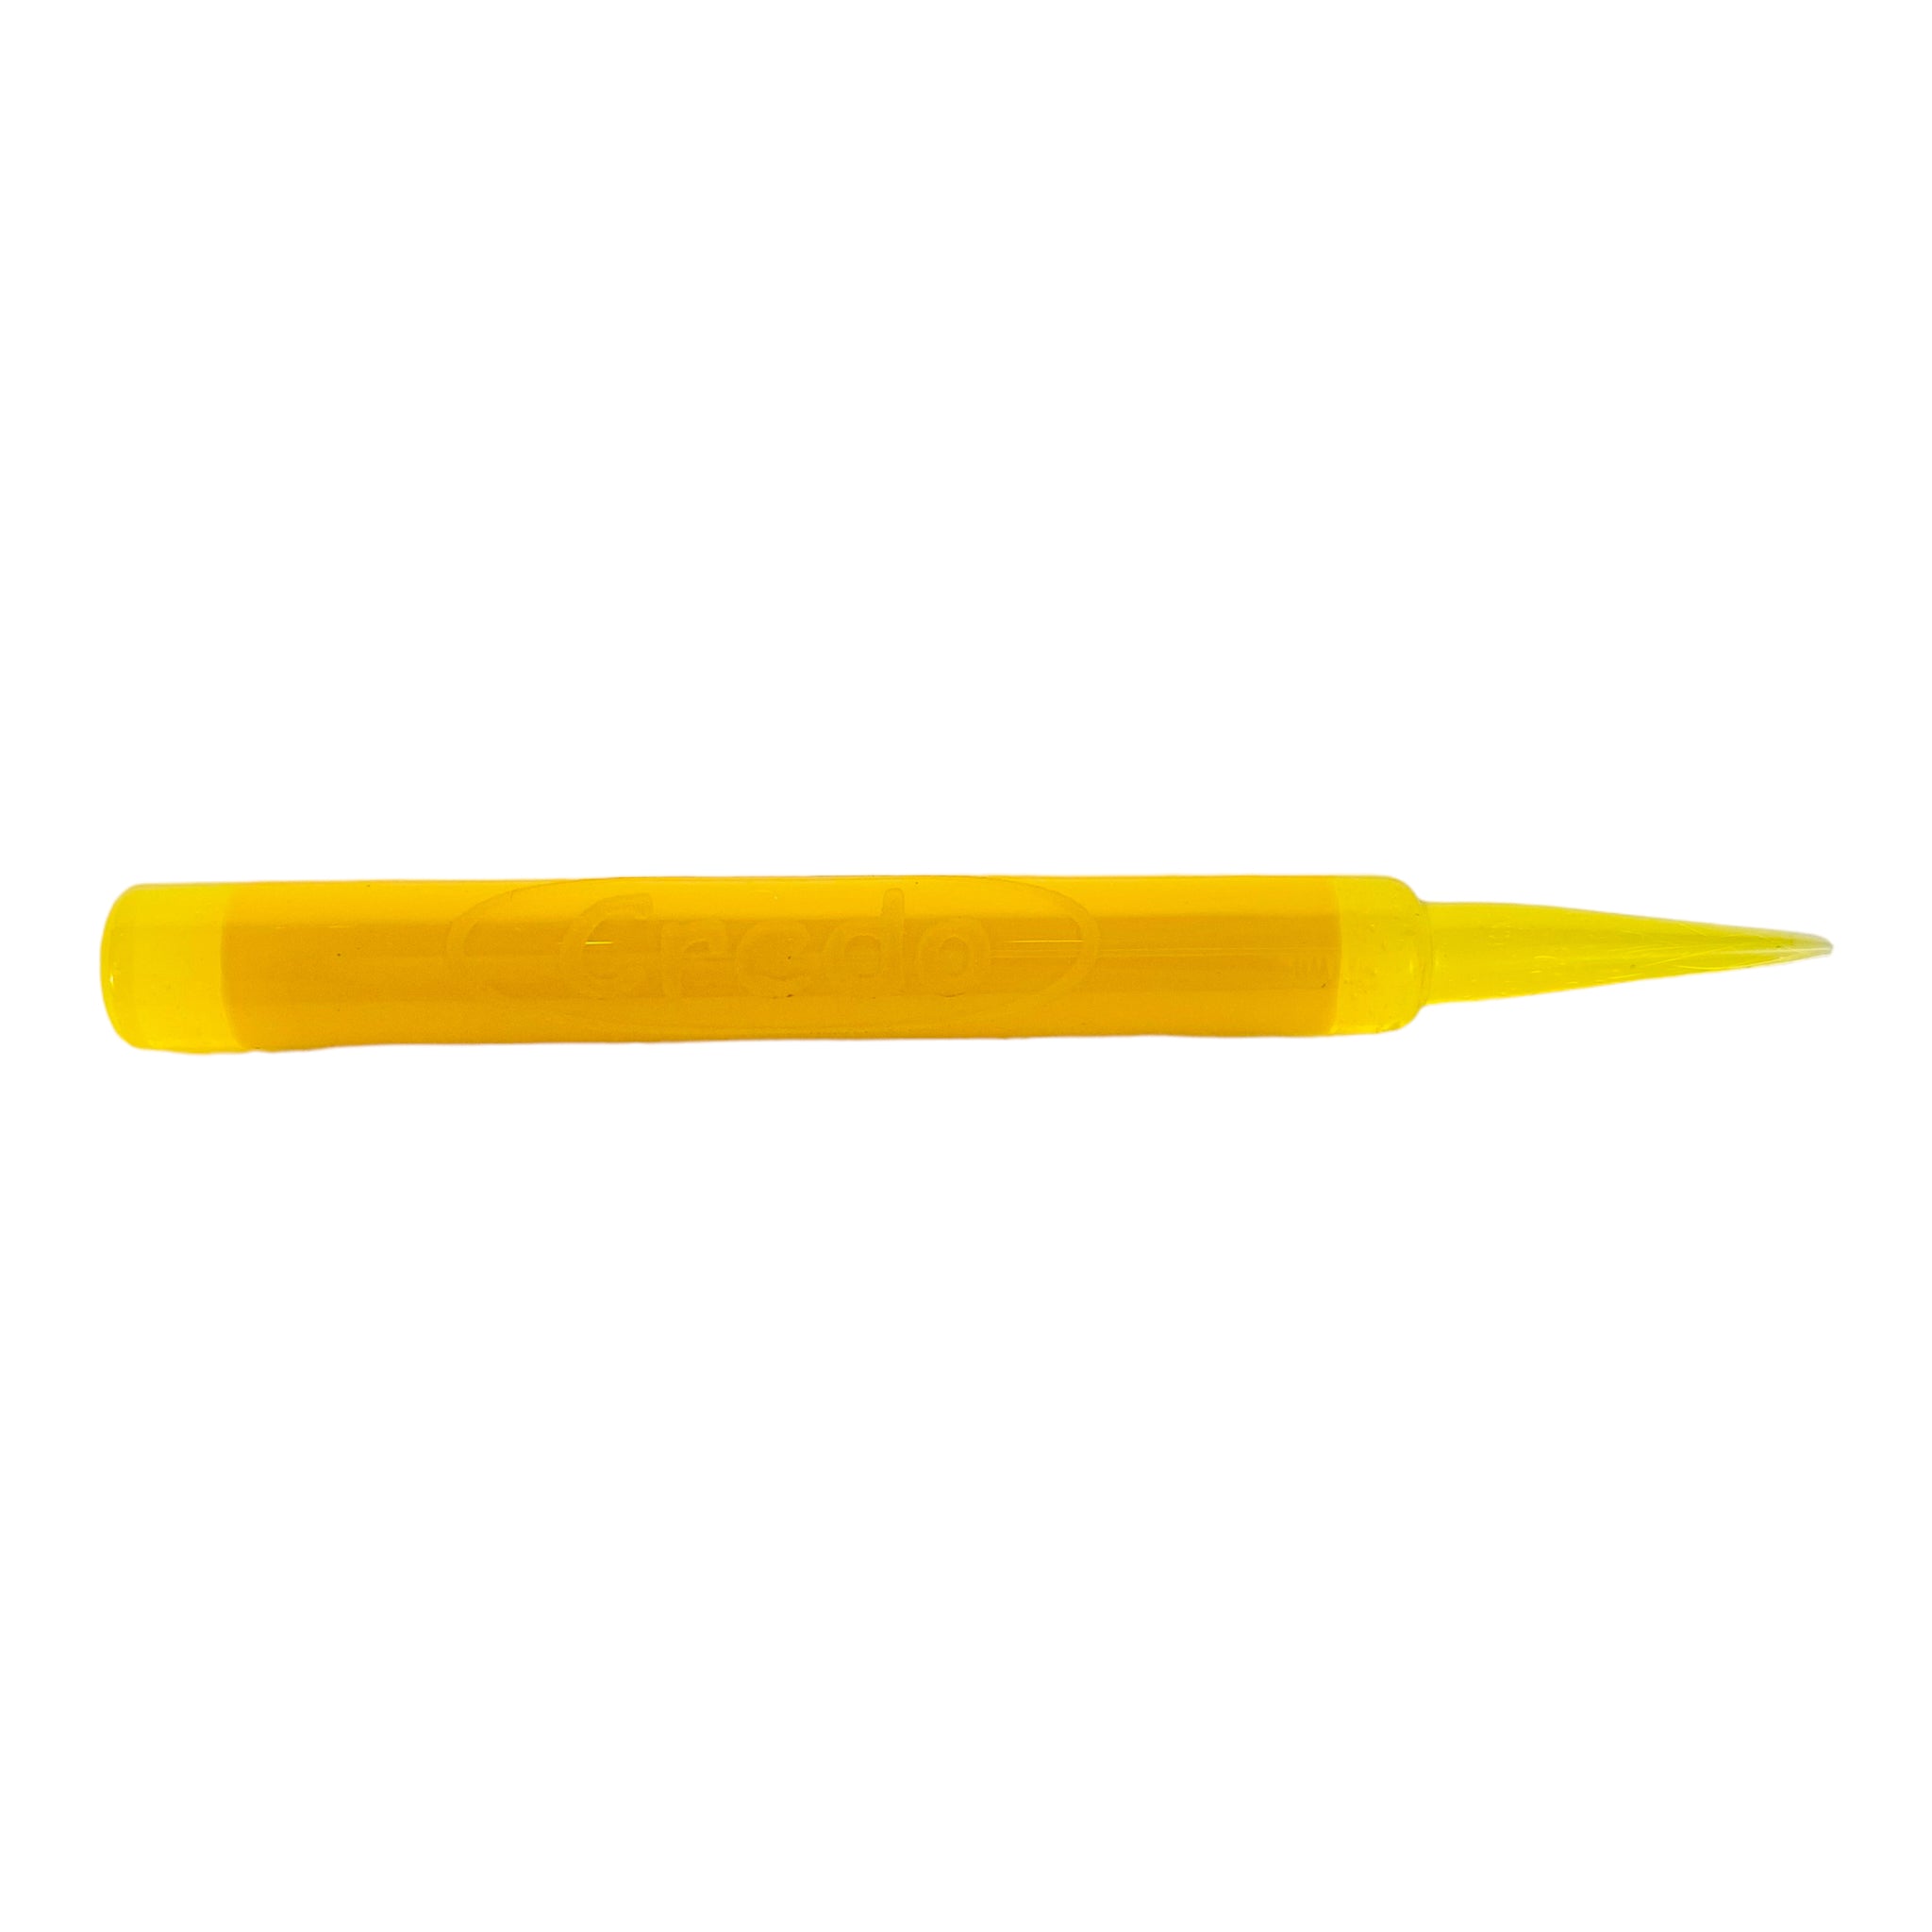 Creedo Glass - Yellow Glass Crayon Dab Tool